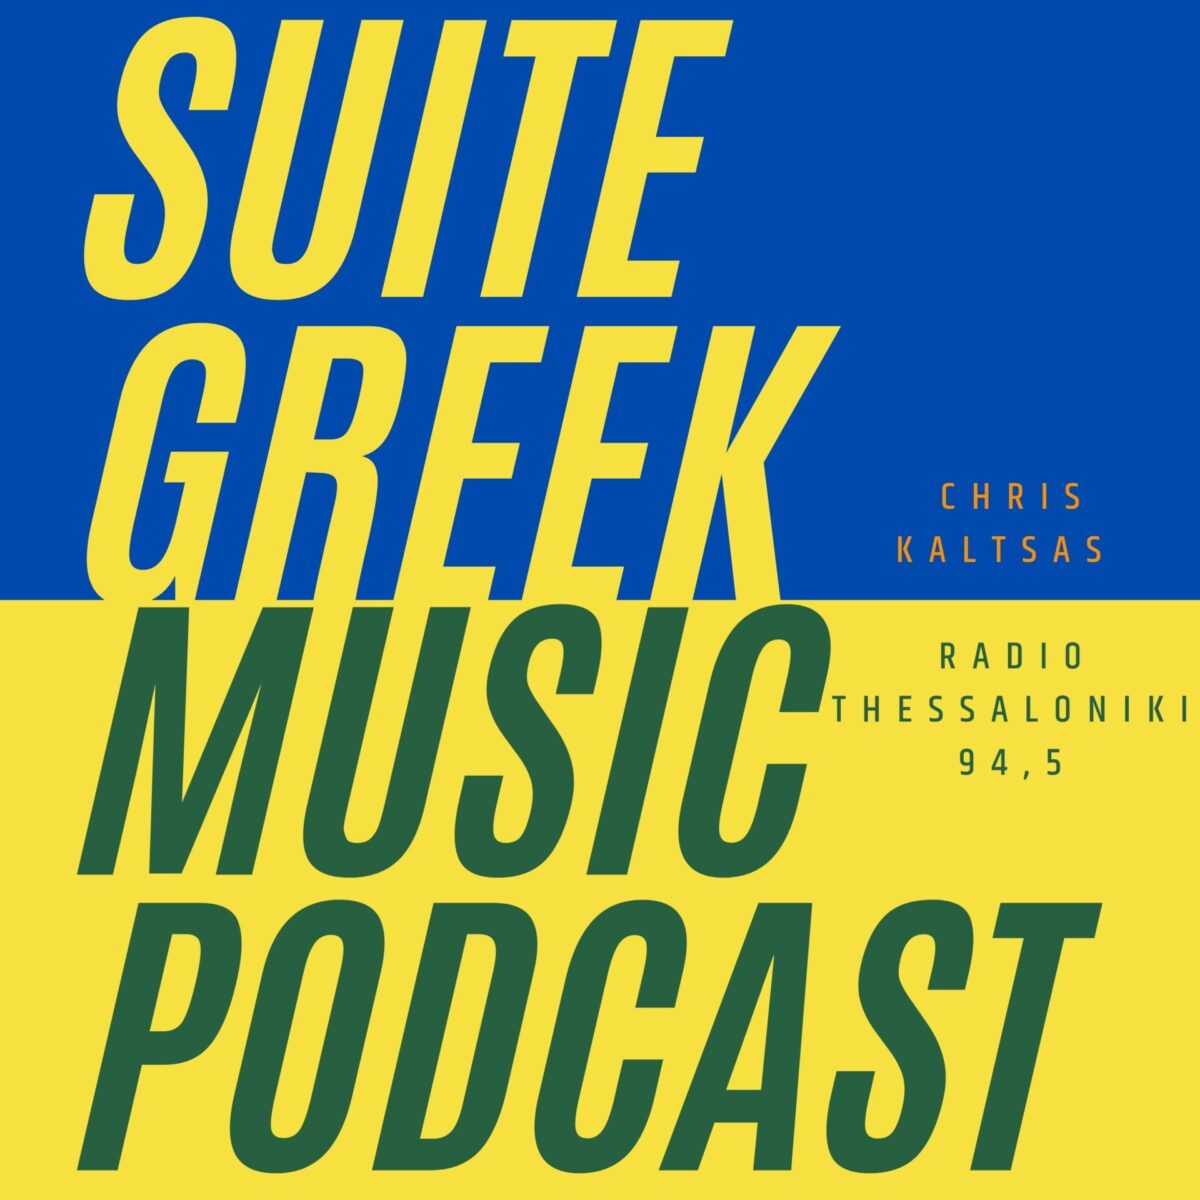 Suite Greek Music podcast στο Ράδιο Θεσσαλονίκη 94,5 S03E09